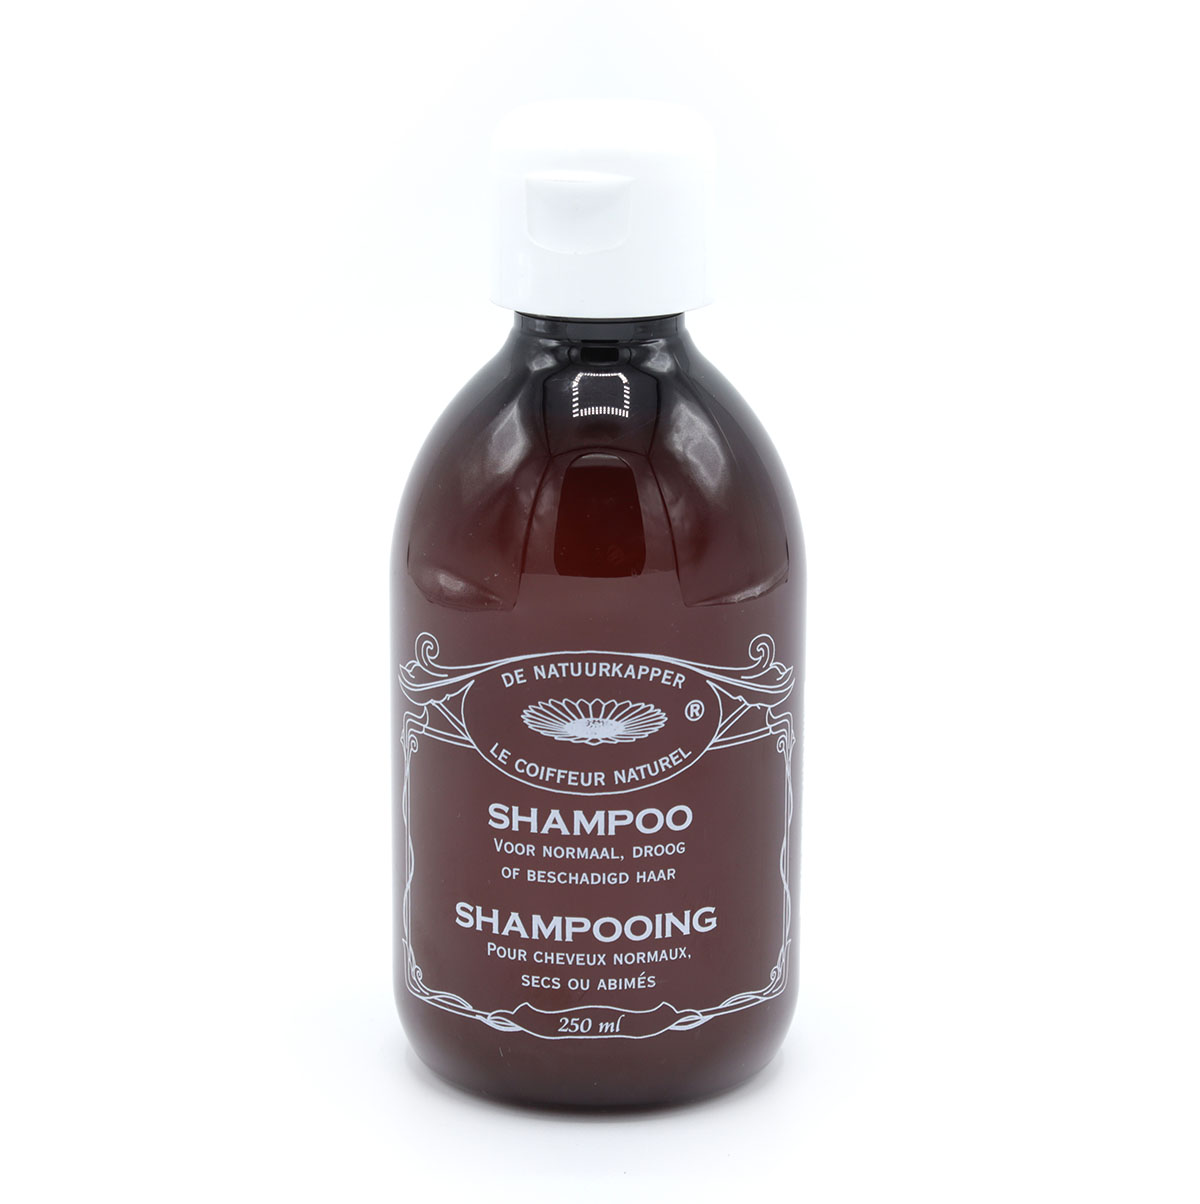 DN Shampoo norm, dr. of besch. haar 250ml